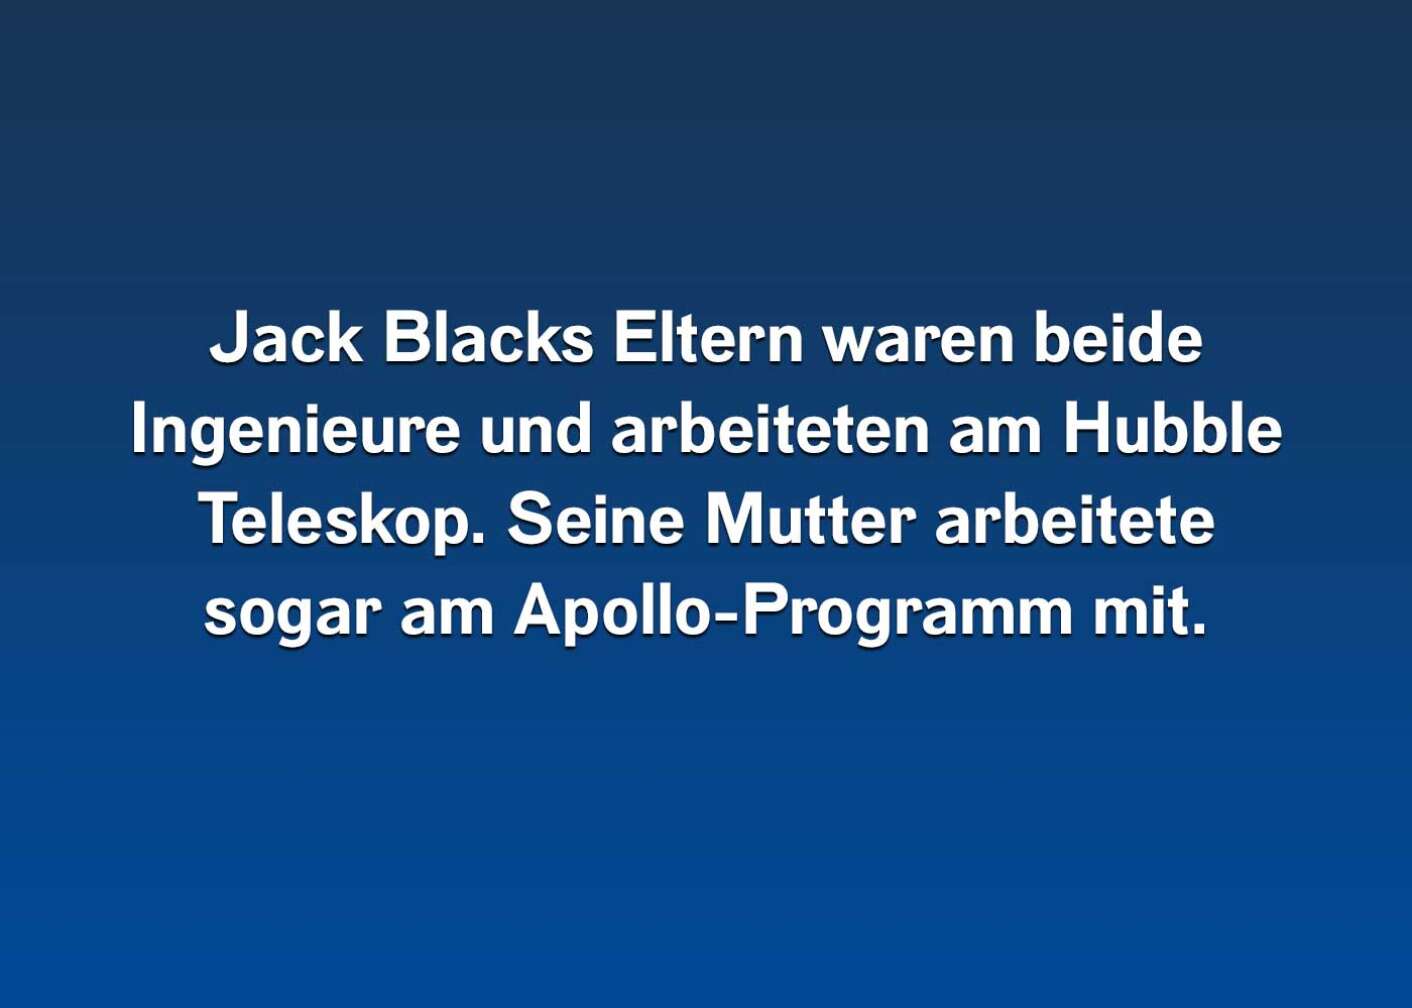 10 Fakten über Jack Black (1)